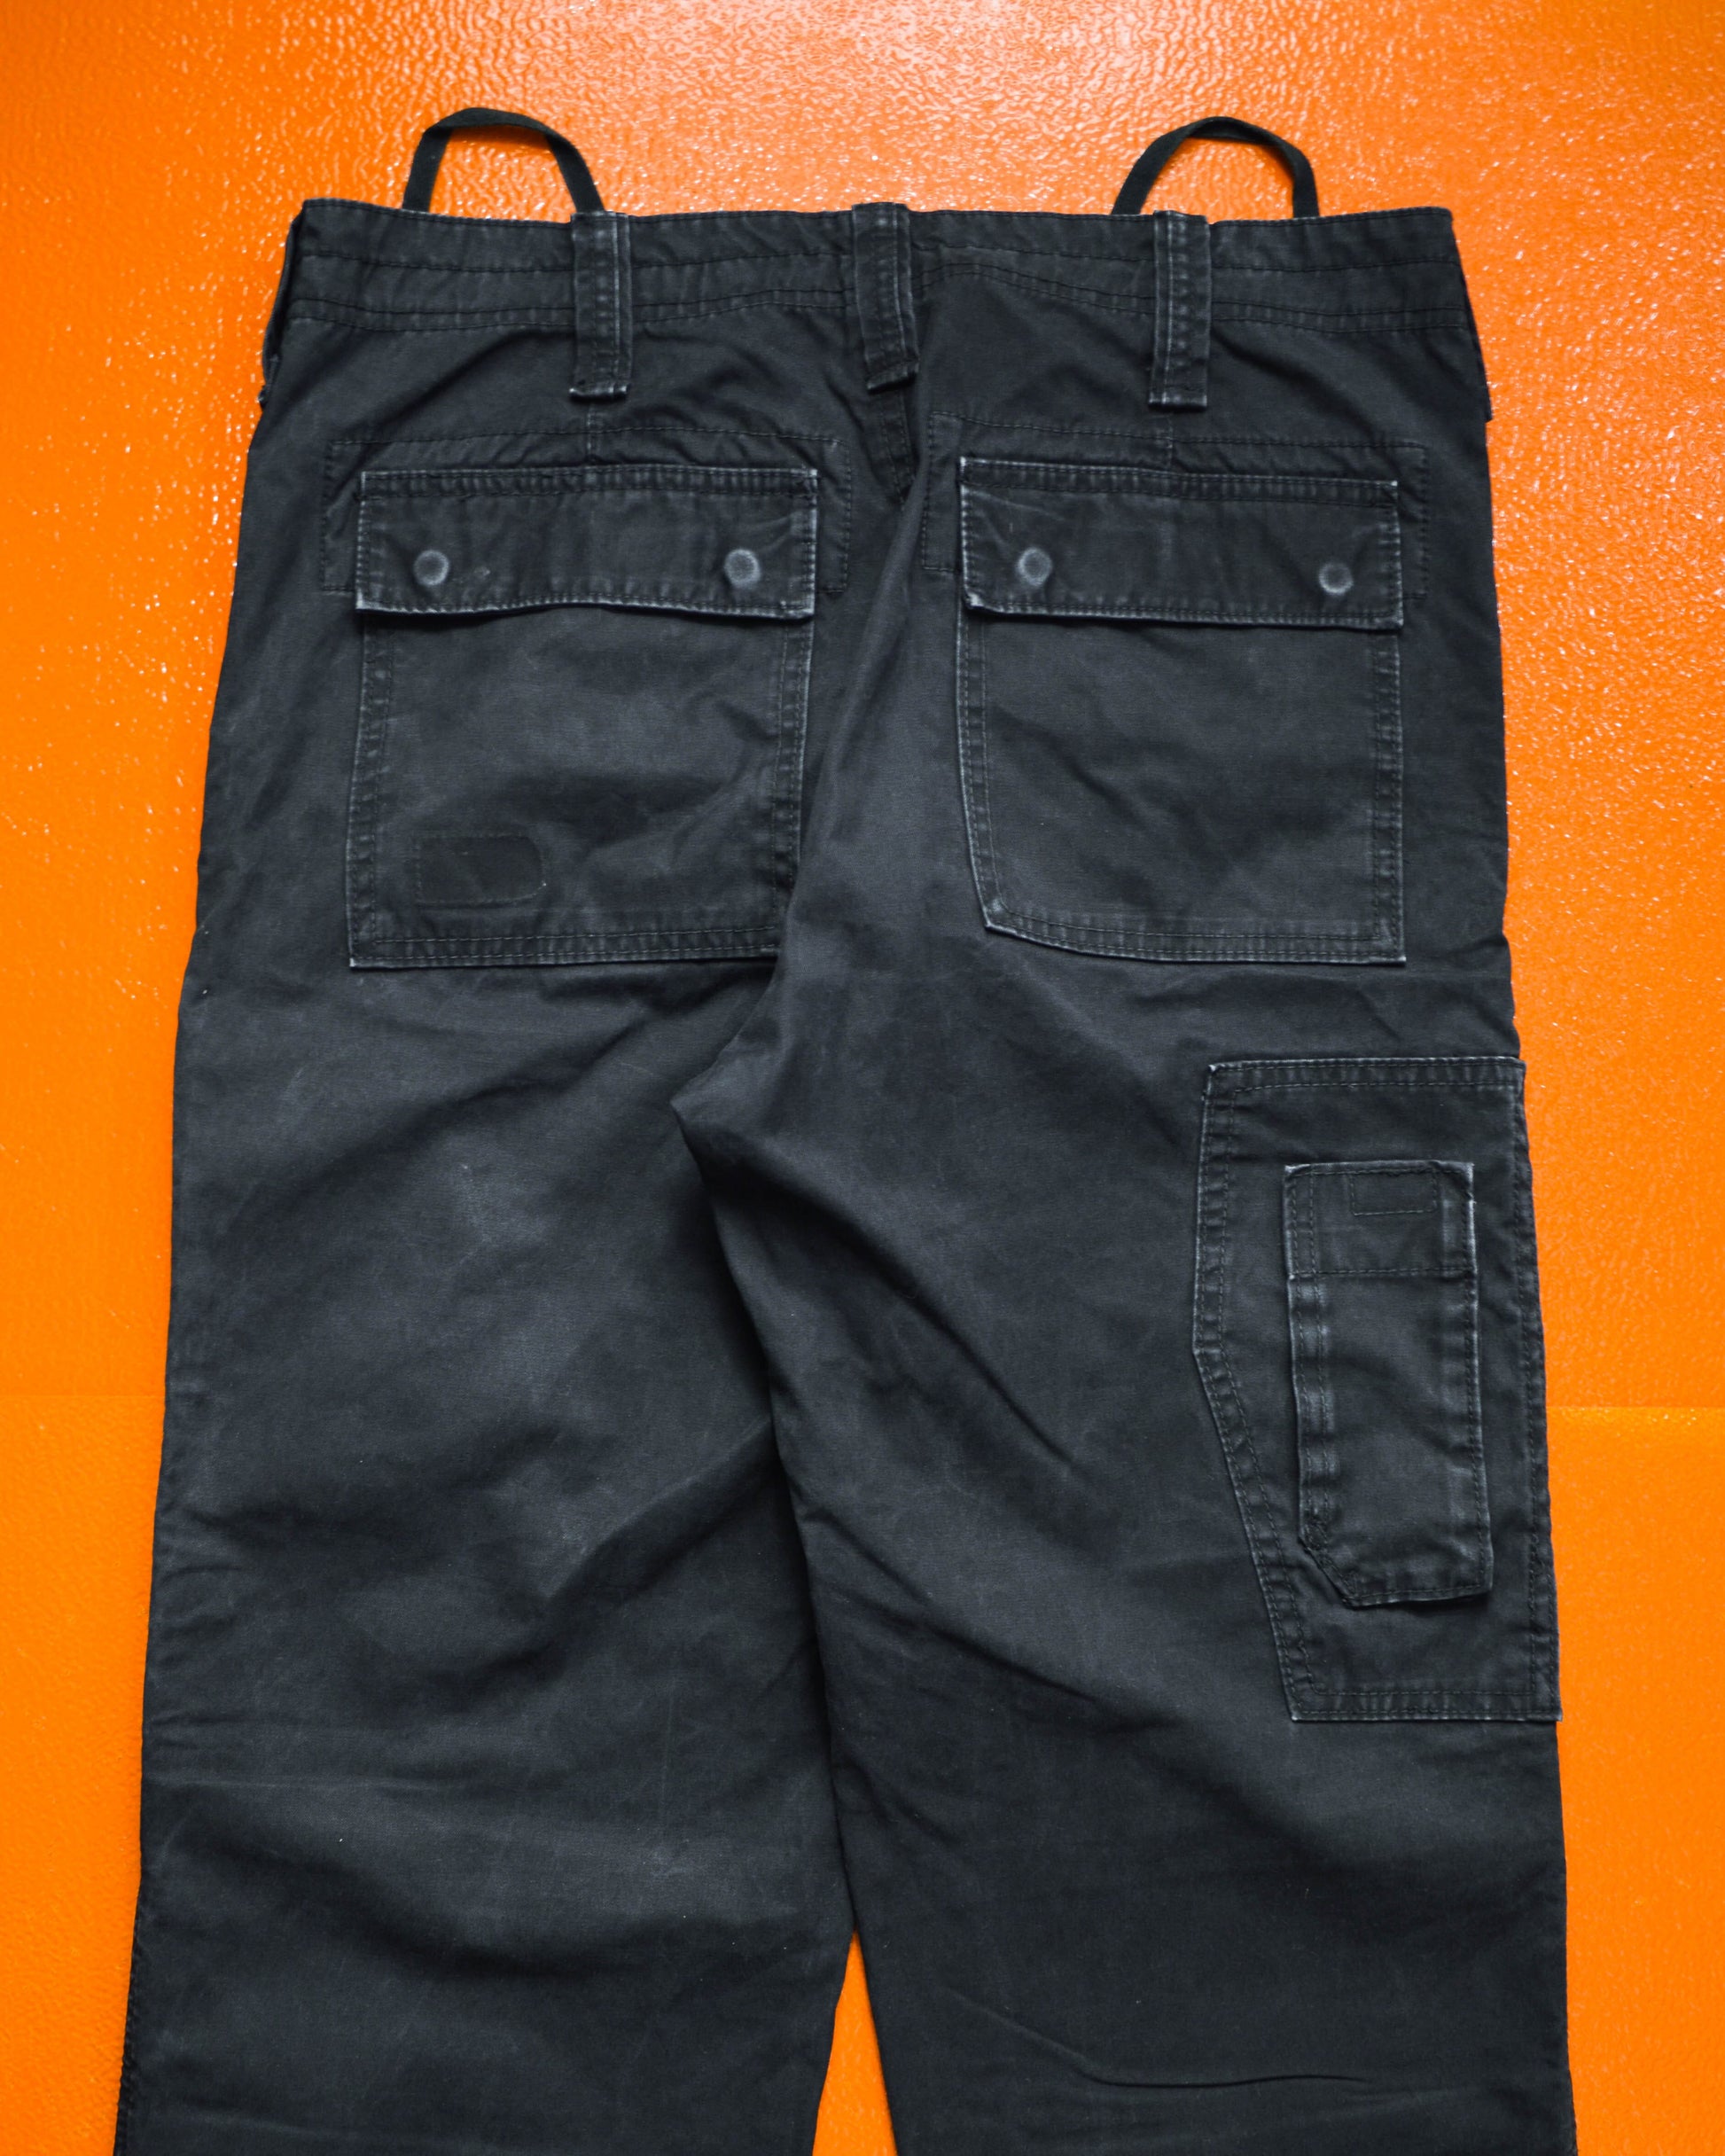 DKNY DKNY Multi-Pocket Asymmetrical Black Cargo Pants (~32~)